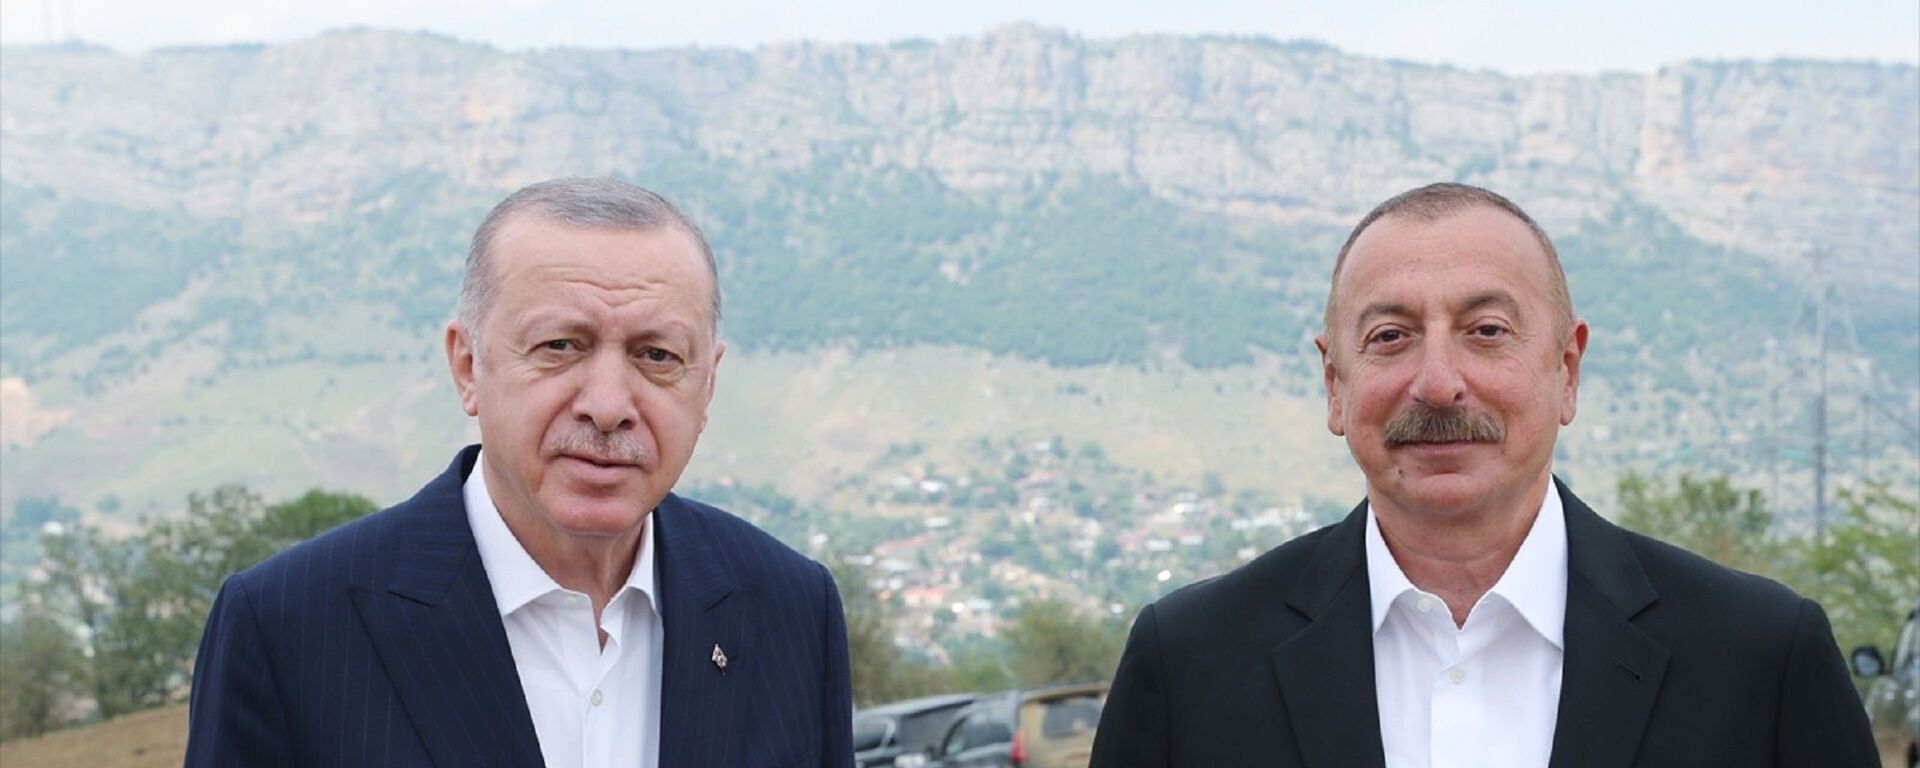 Türkiye Cumhurbaşkanı Recep Tayyip Erdoğan, Dağlık Karabağ'ın Şuşa şehrine geldi. Erdoğan, burada Azerbaycan Cumhurbaşkanı İlham Aliyev ile sohbet etti. - Sputnik Türkiye, 1920, 18.06.2021